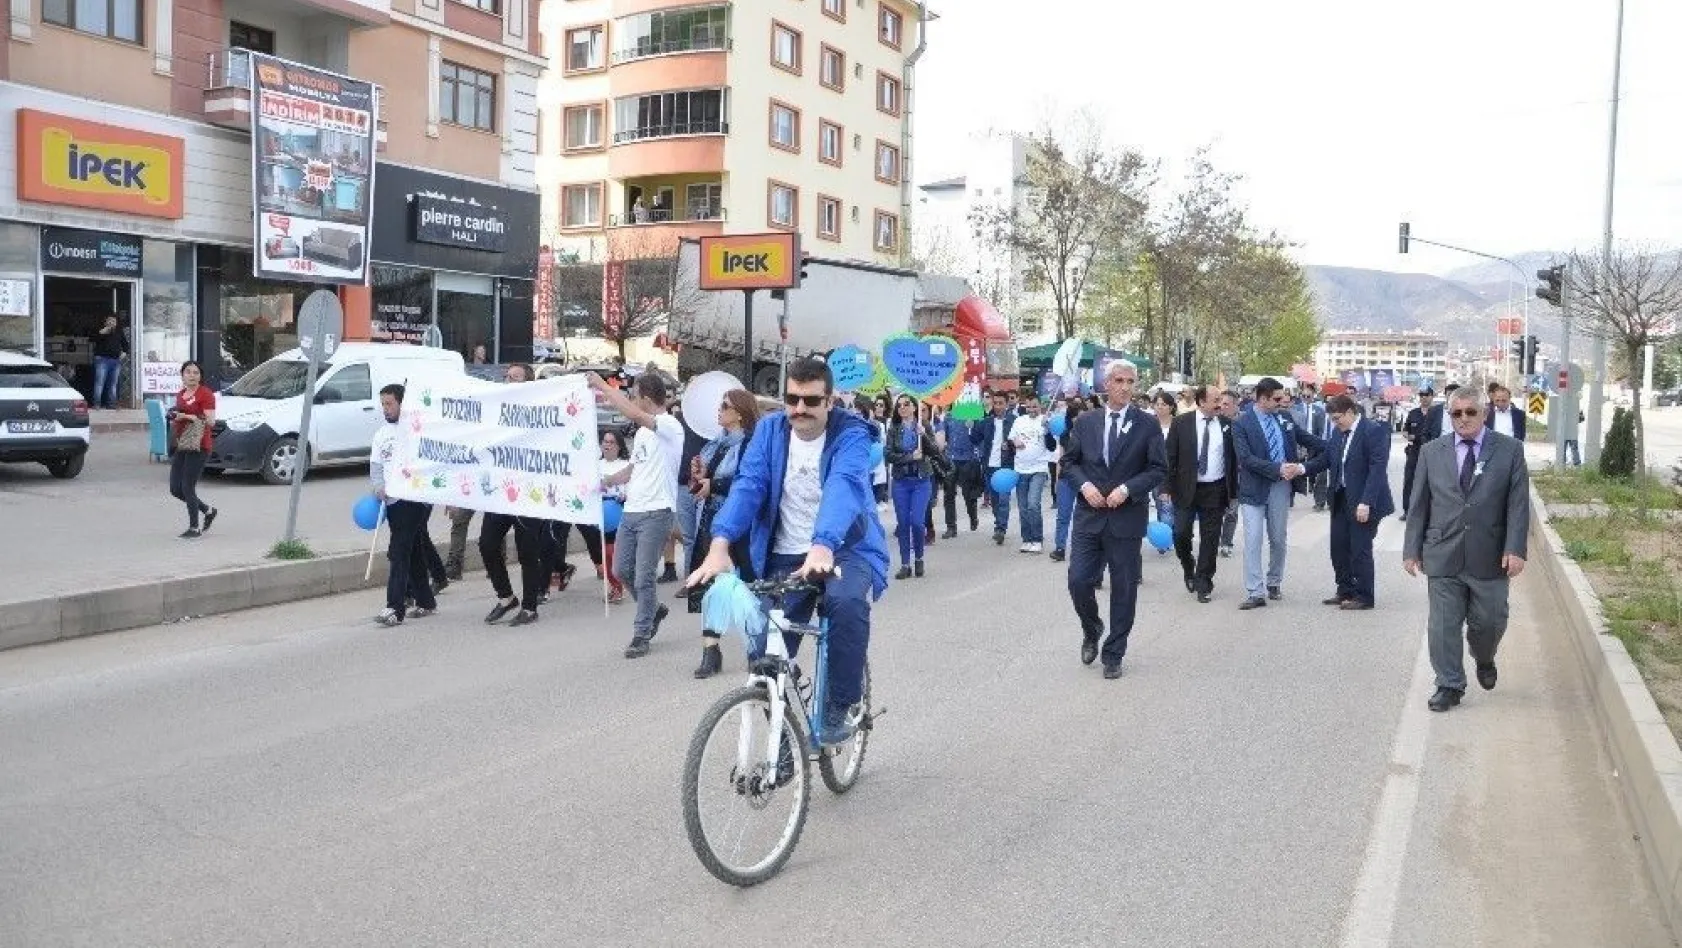 Tunceli'de Otizim günü etkinlikleri
